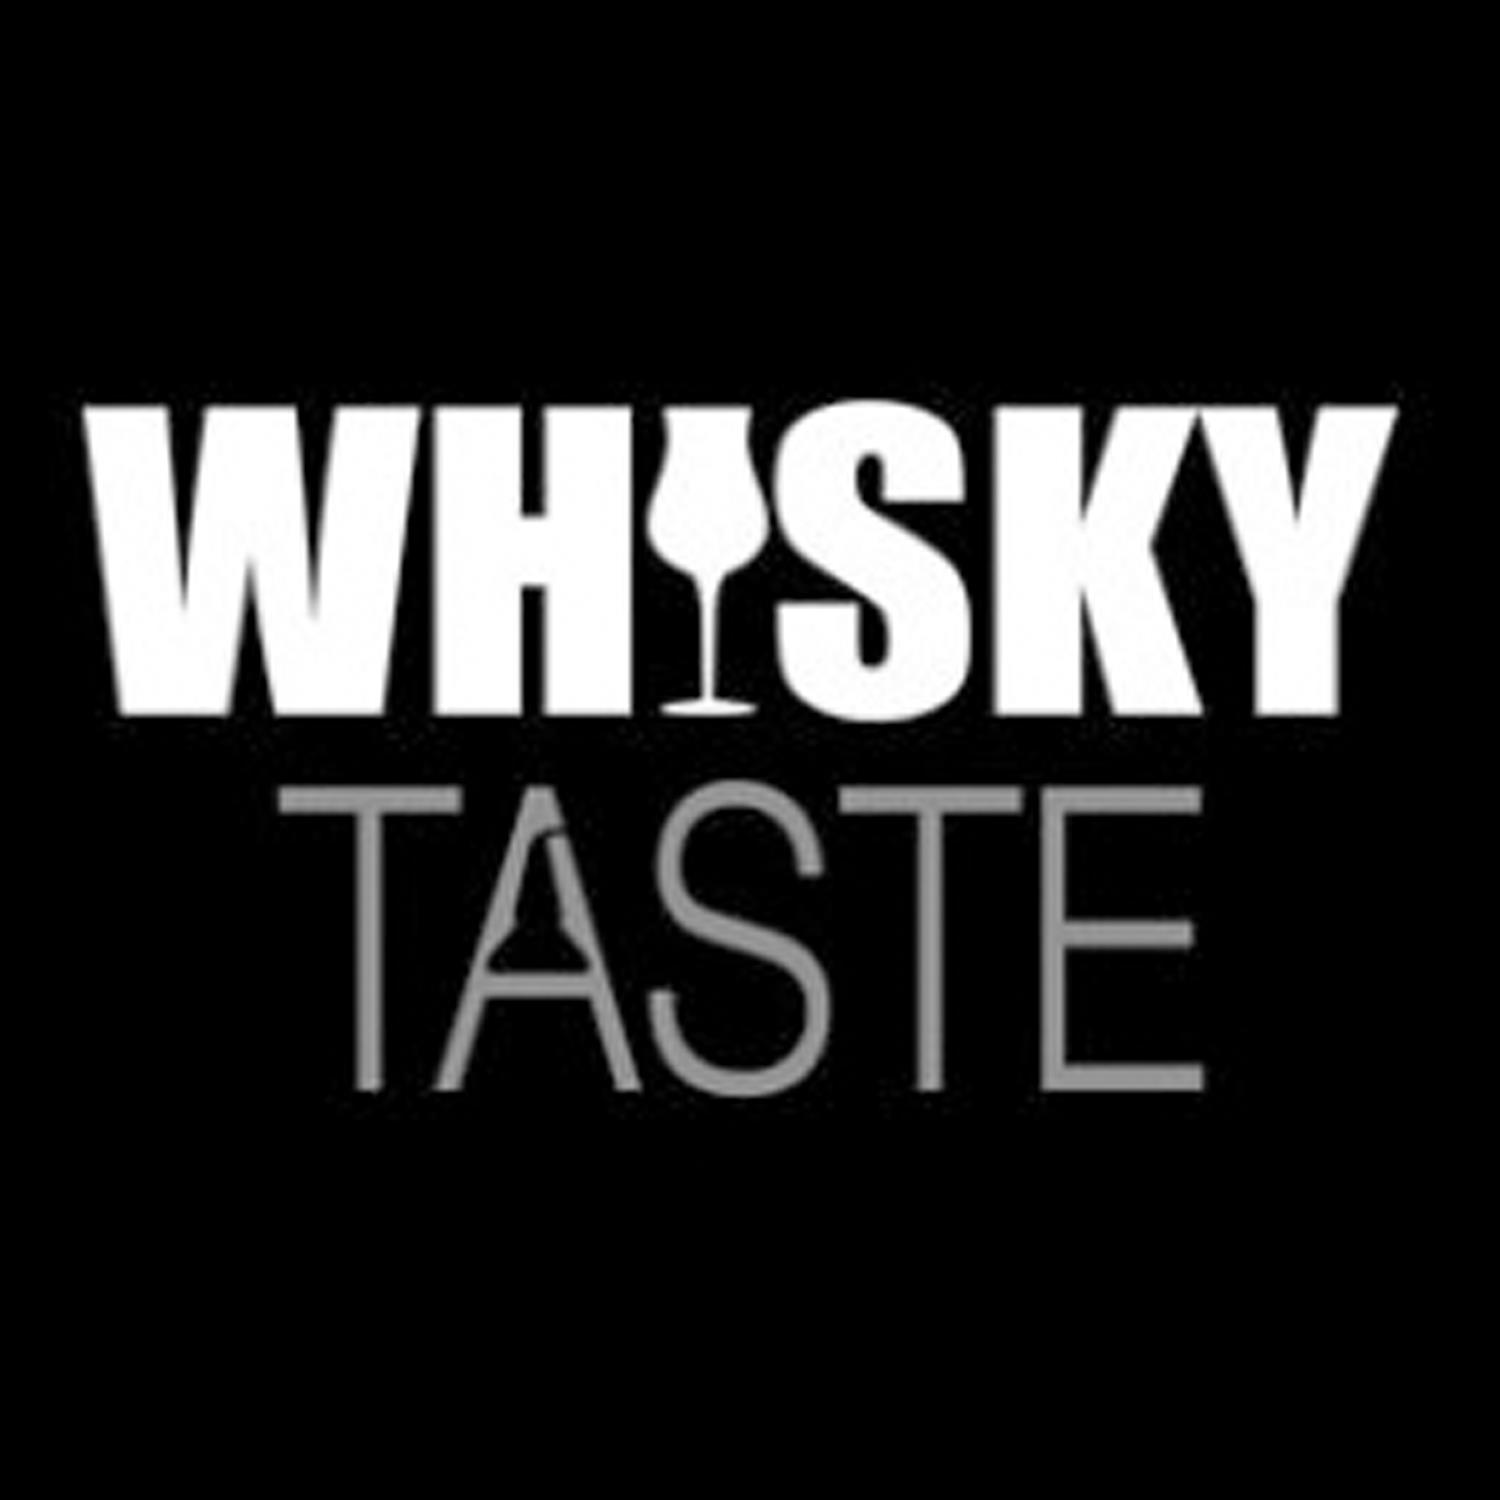 WHISKY TASTE Whisky taste